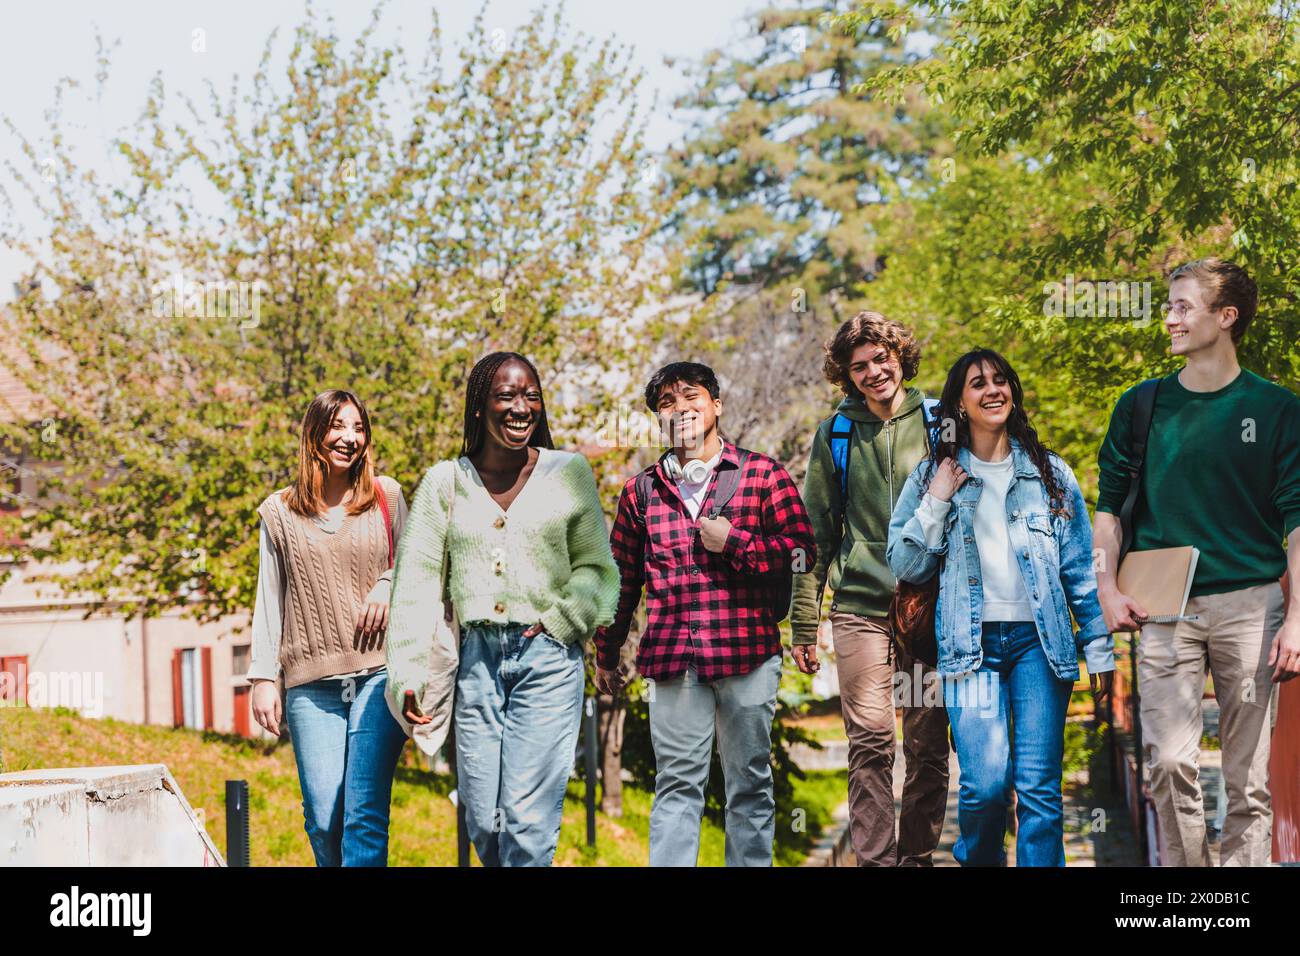 Eine vielfältige Gruppe von Universitätsstudenten genießt einen sonnigen Tag auf dem Campus - Freunde laufen und lachen zusammen, teilen einen Moment echter Freundschaft und Stockfoto